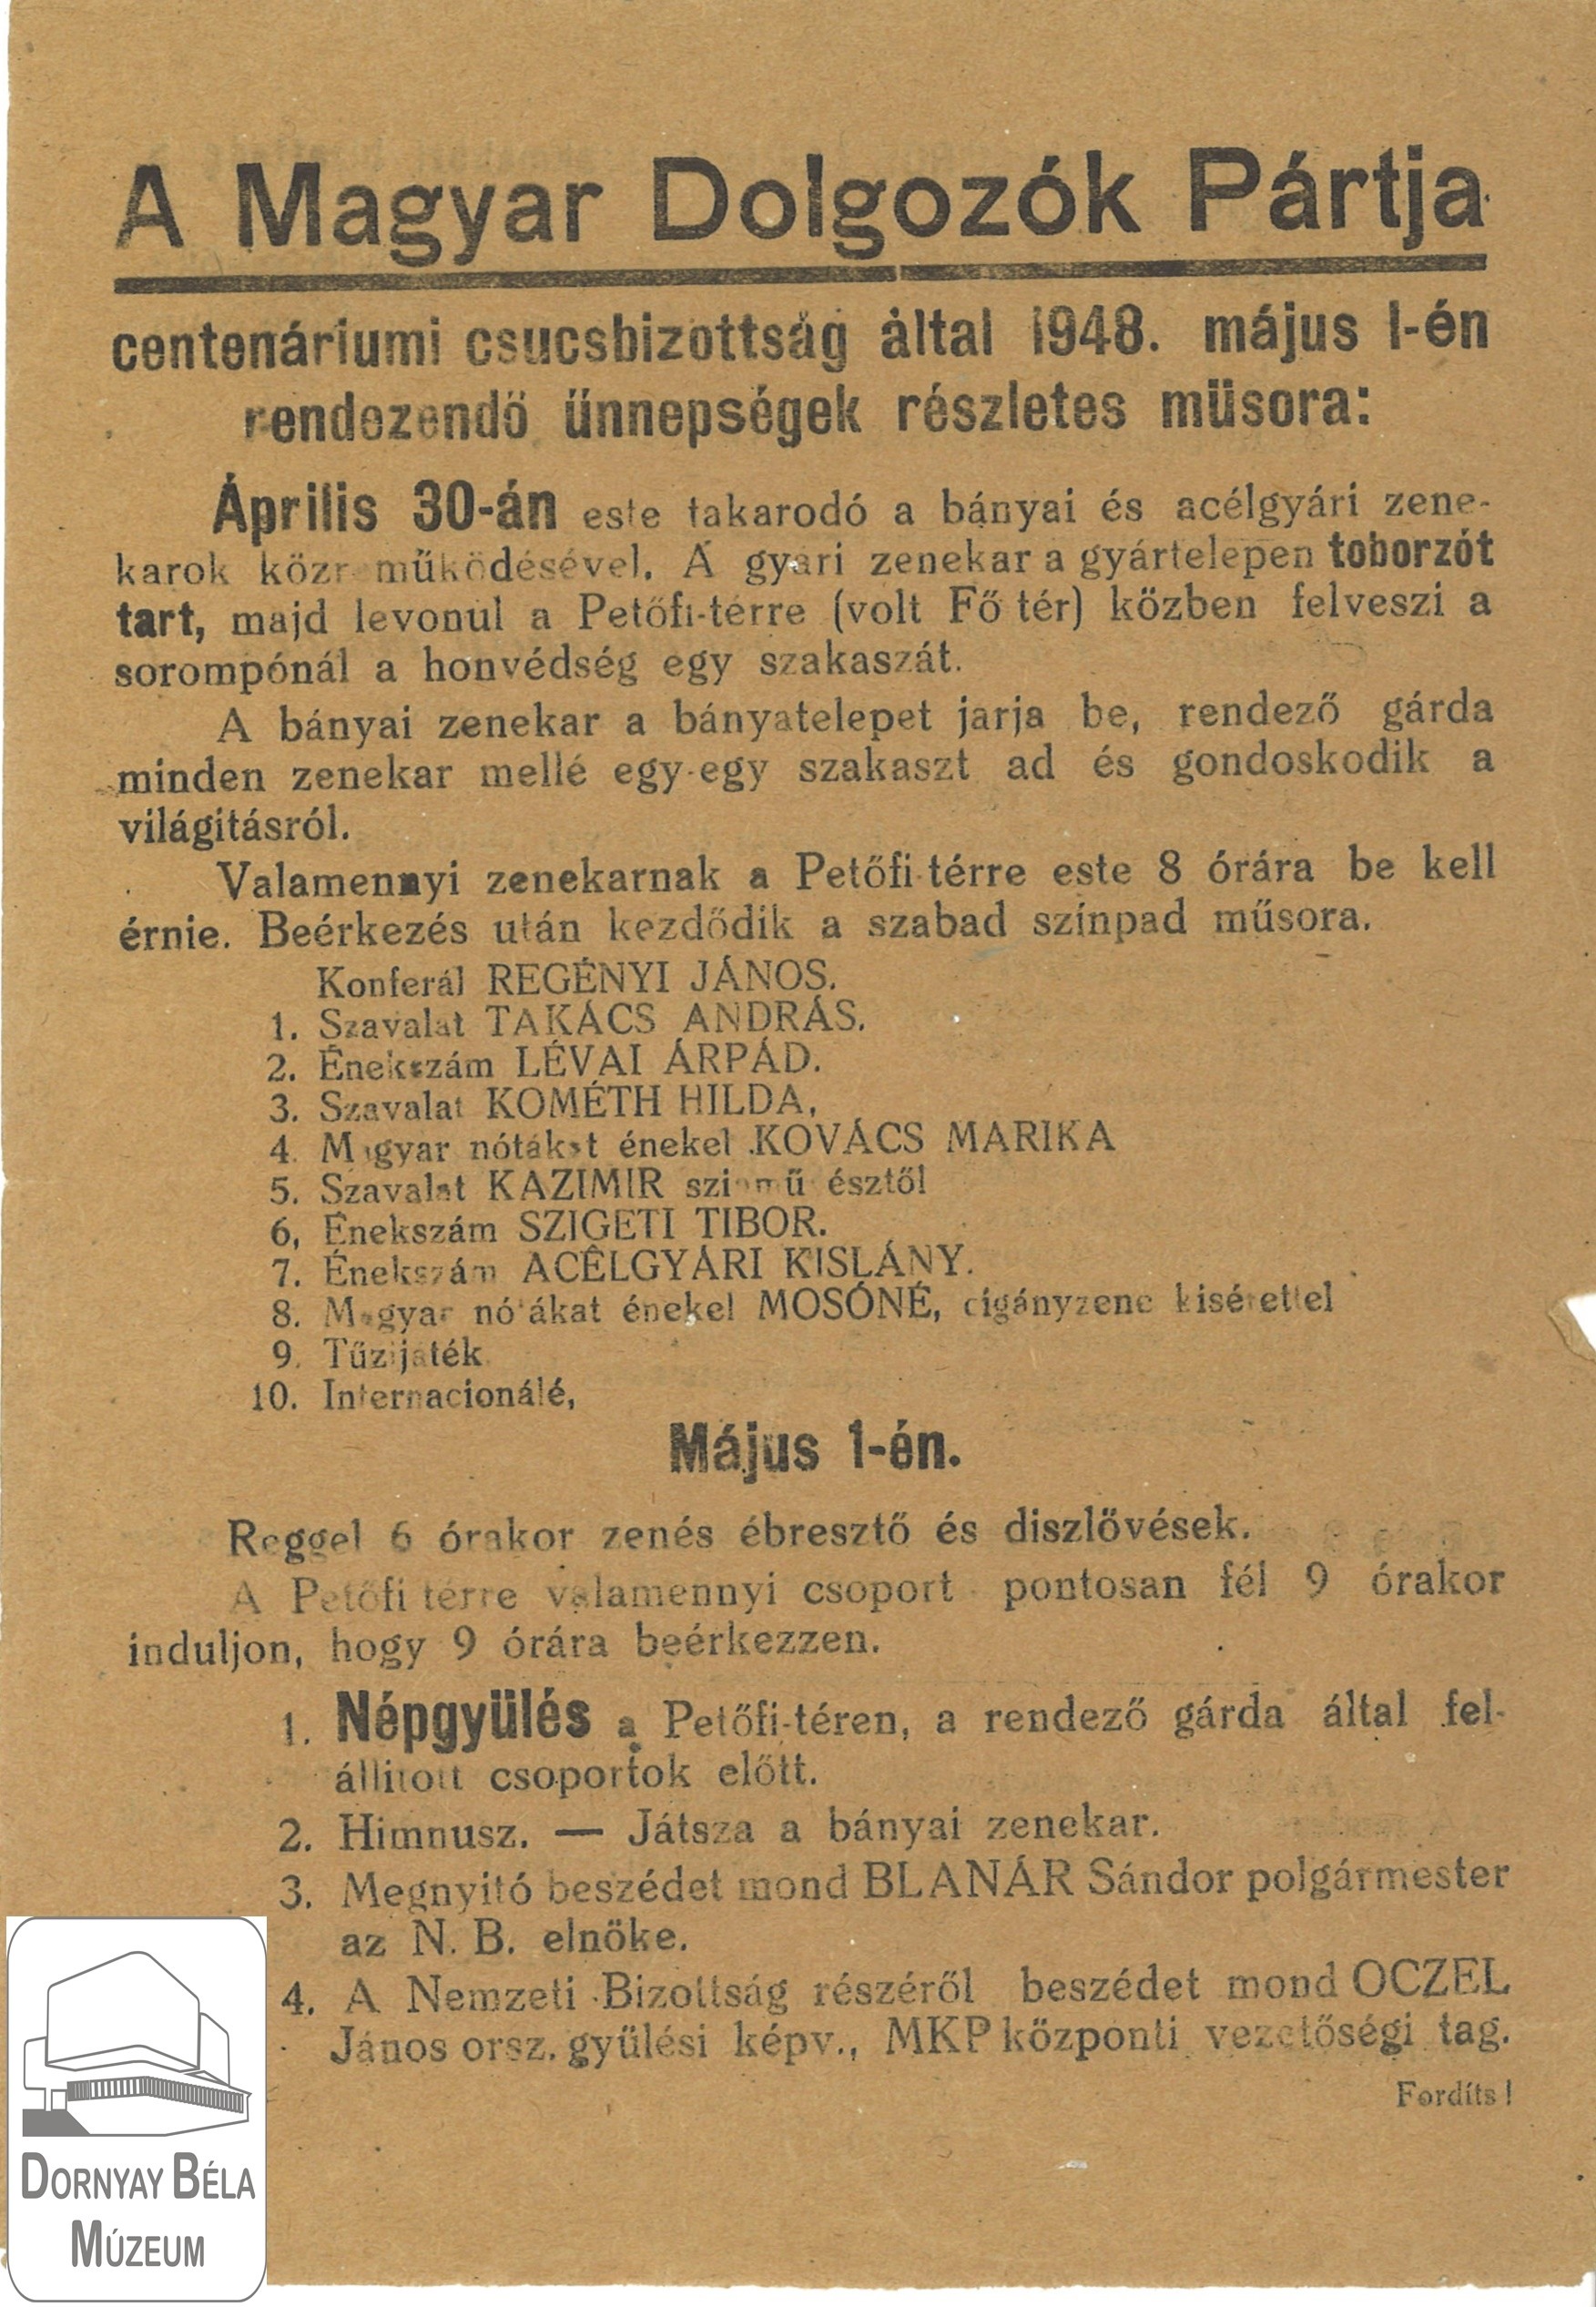 MDP Salgótarjáni Bizottsága által szervezet május 1-i program. (Dornyay Béla Múzeum, Salgótarján CC BY-NC-SA)